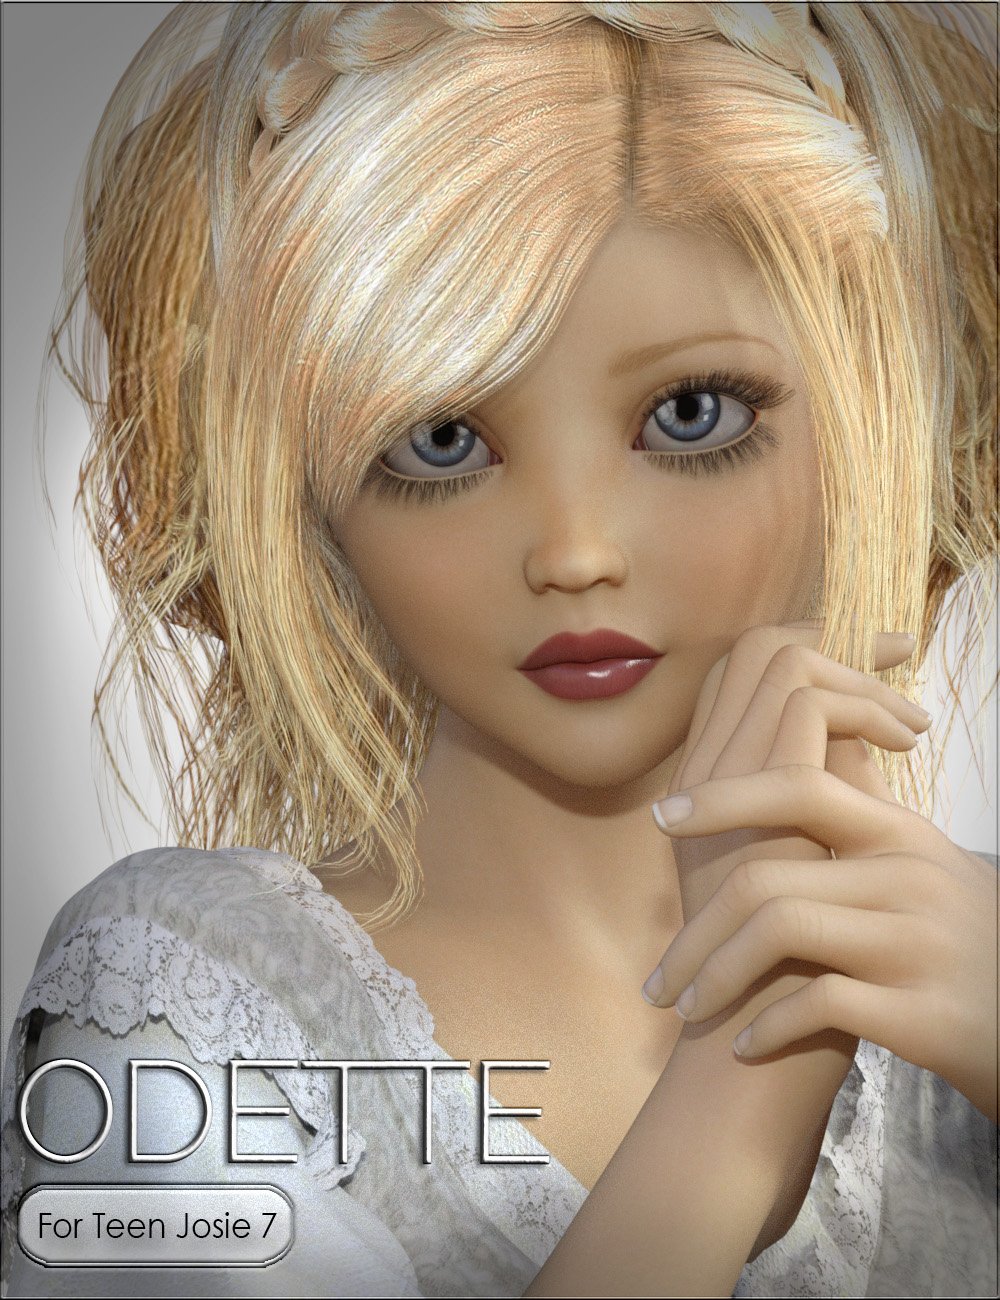 VYK Odette for Teen Josie 7 by: vyktohria, 3D Models by Daz 3D